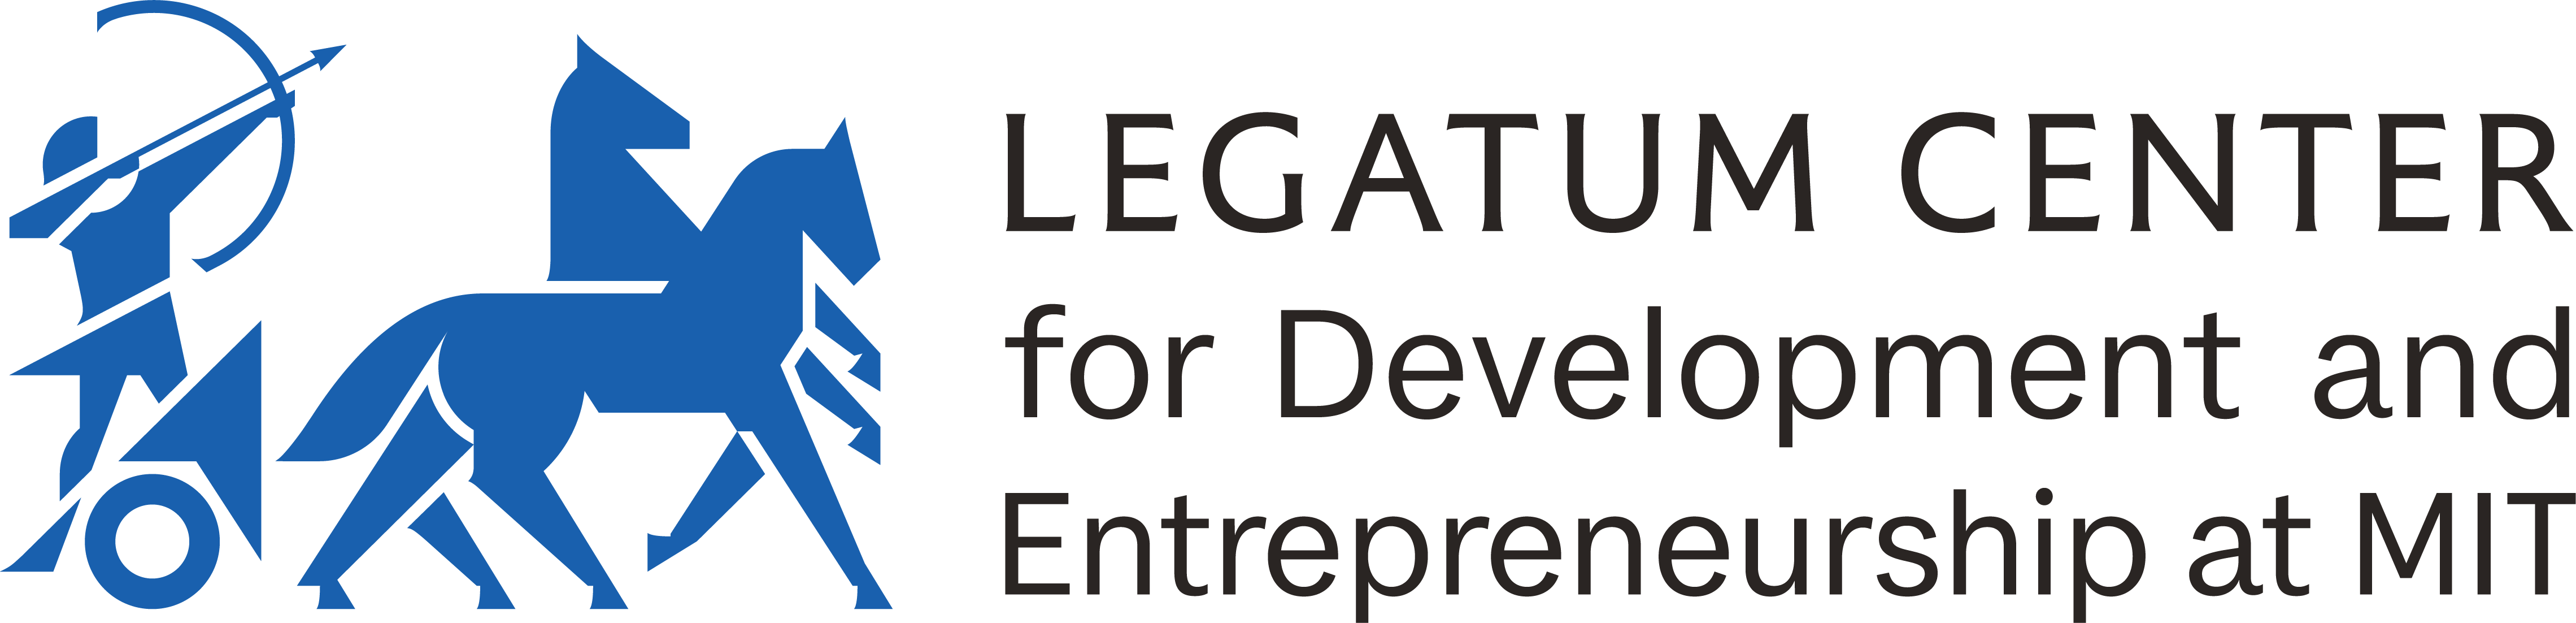 Legatum Center at MIT logo